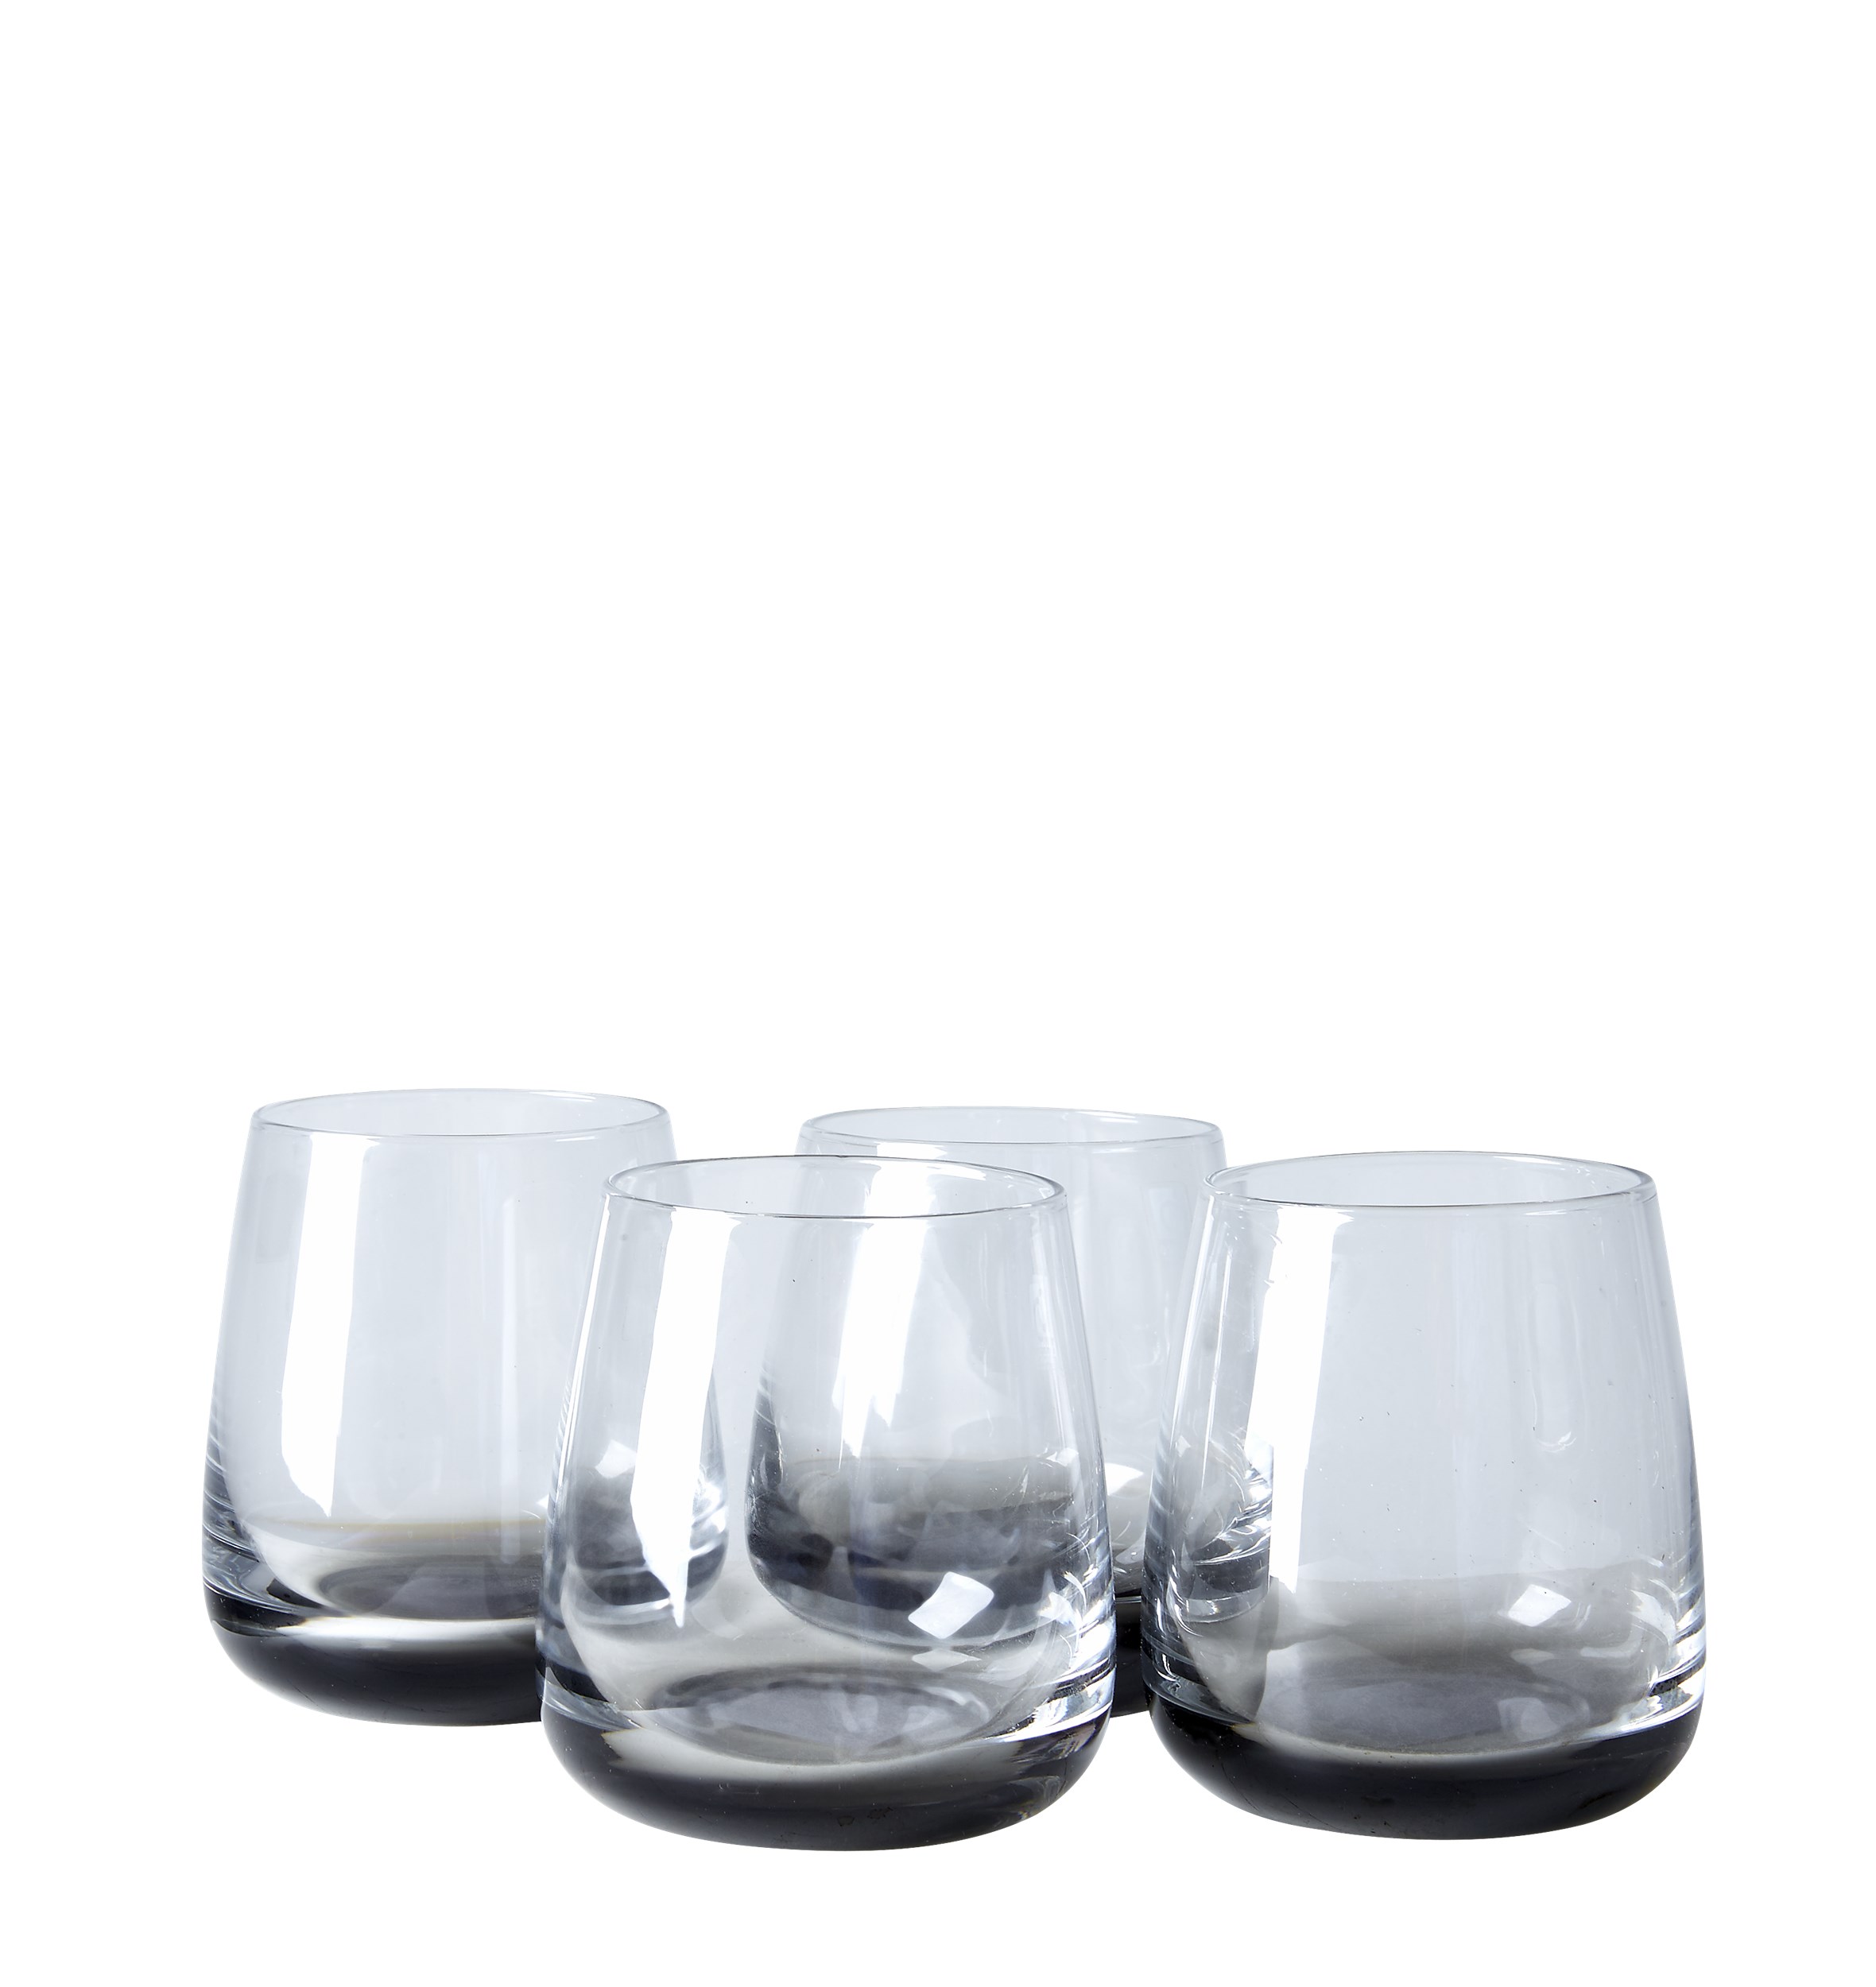 Smoke Vattenglas 4 st per förpackning - Rökfärgat munblåst glas